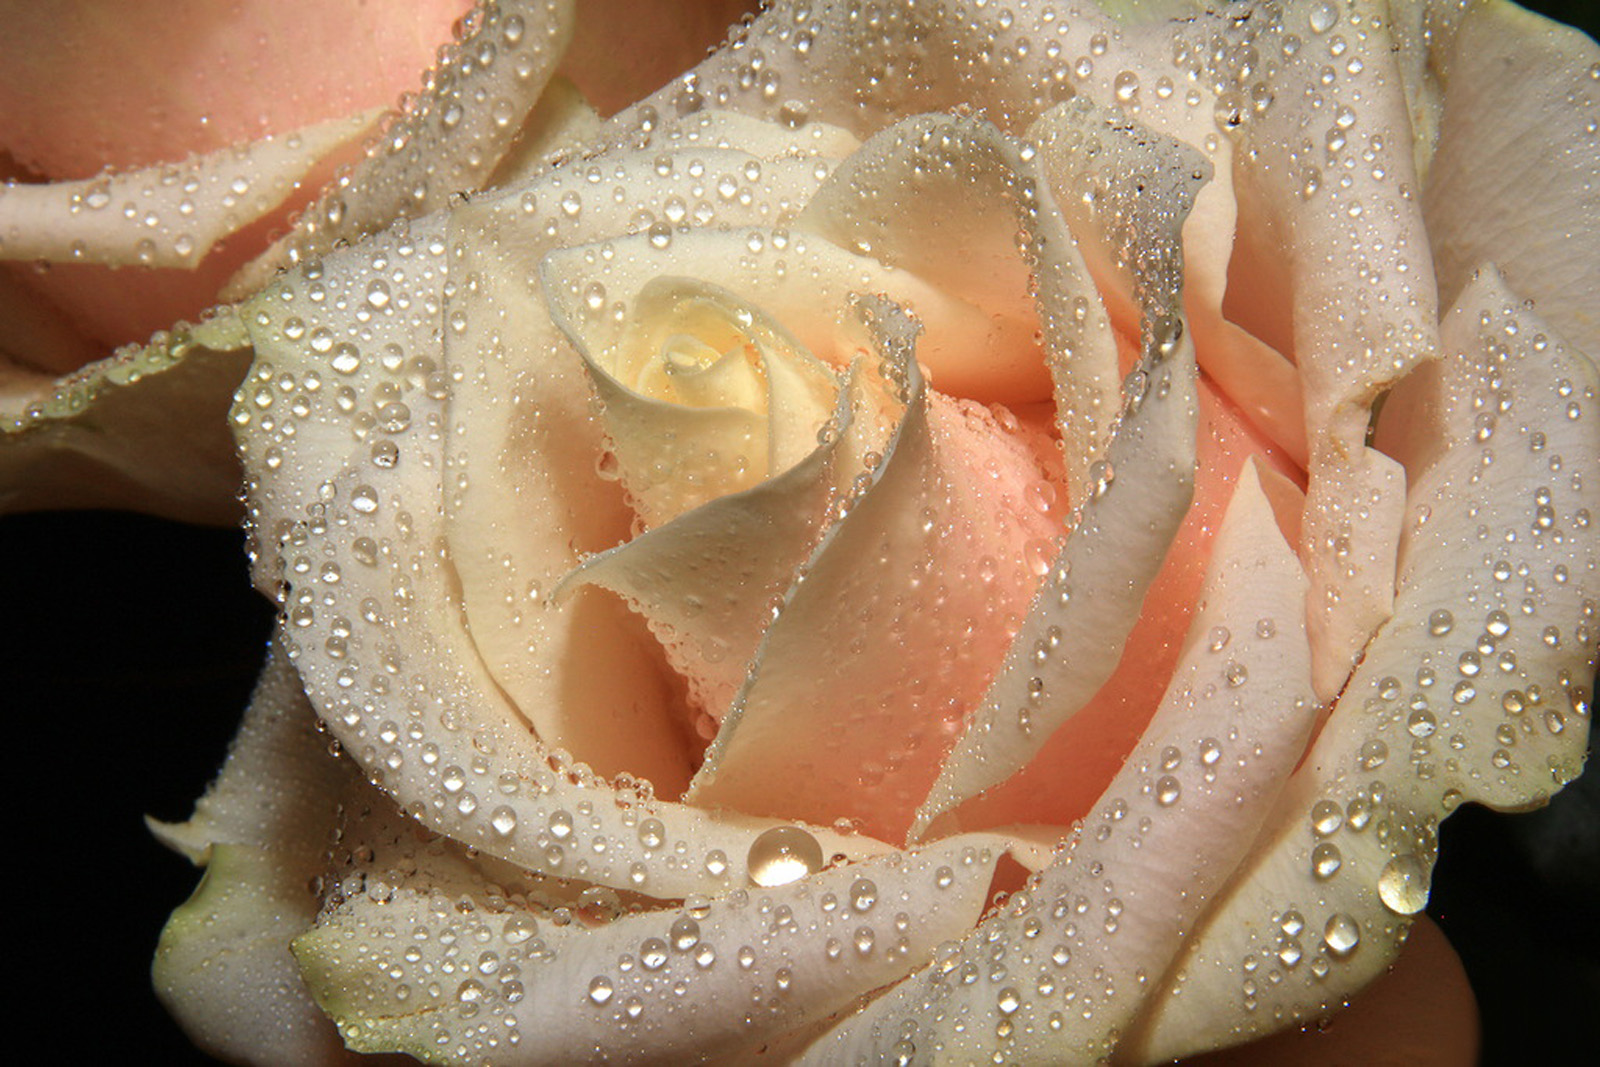 мерцающие картинки белые розы